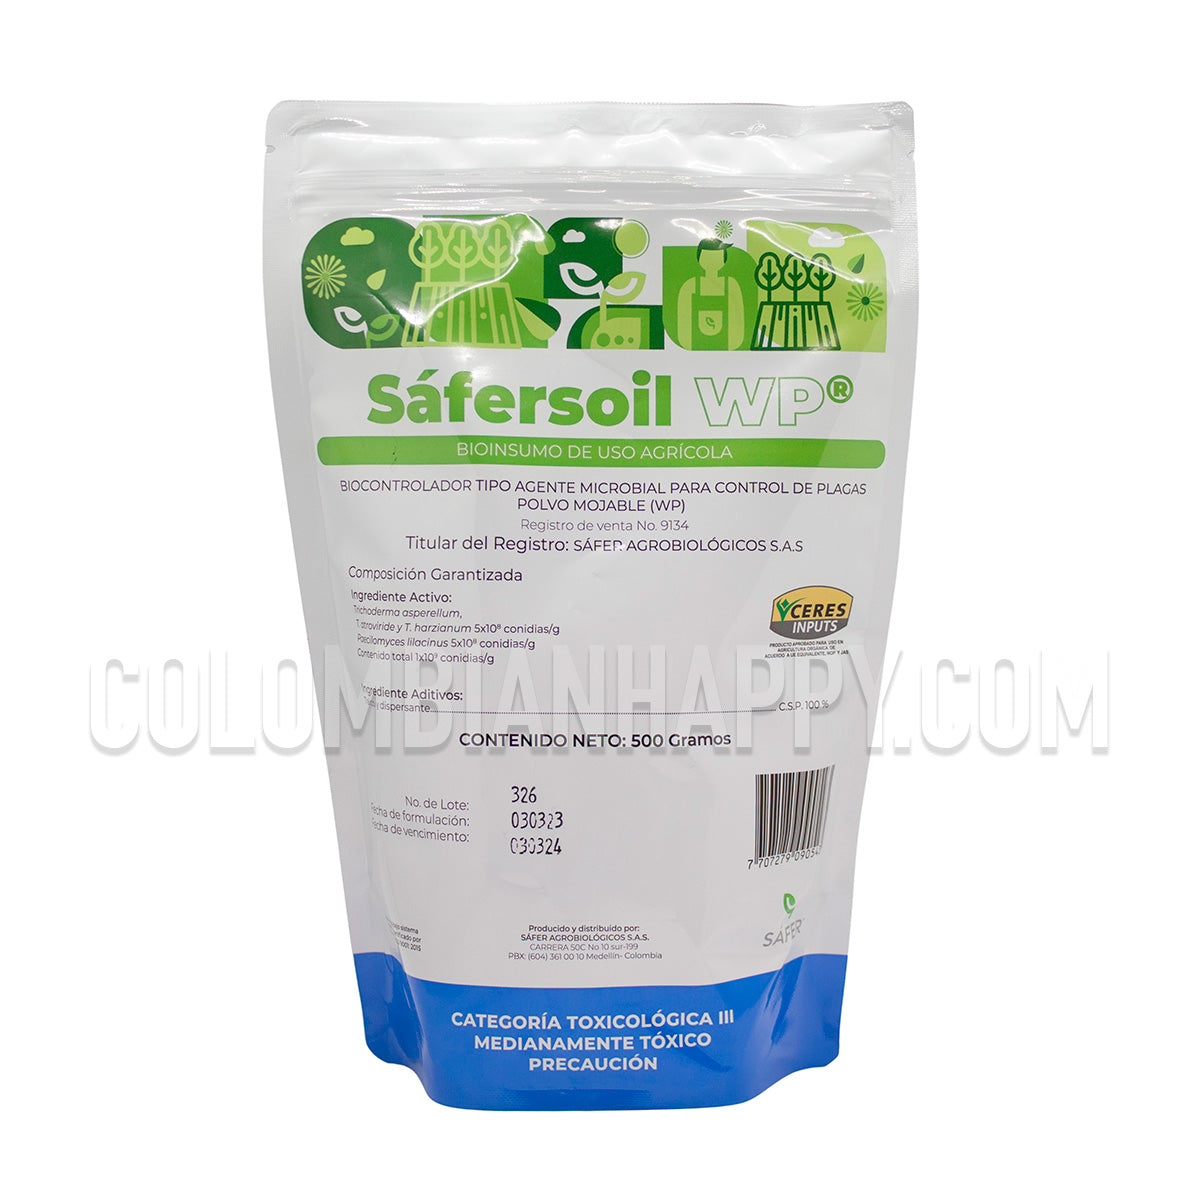 Safer Soil WP 500g